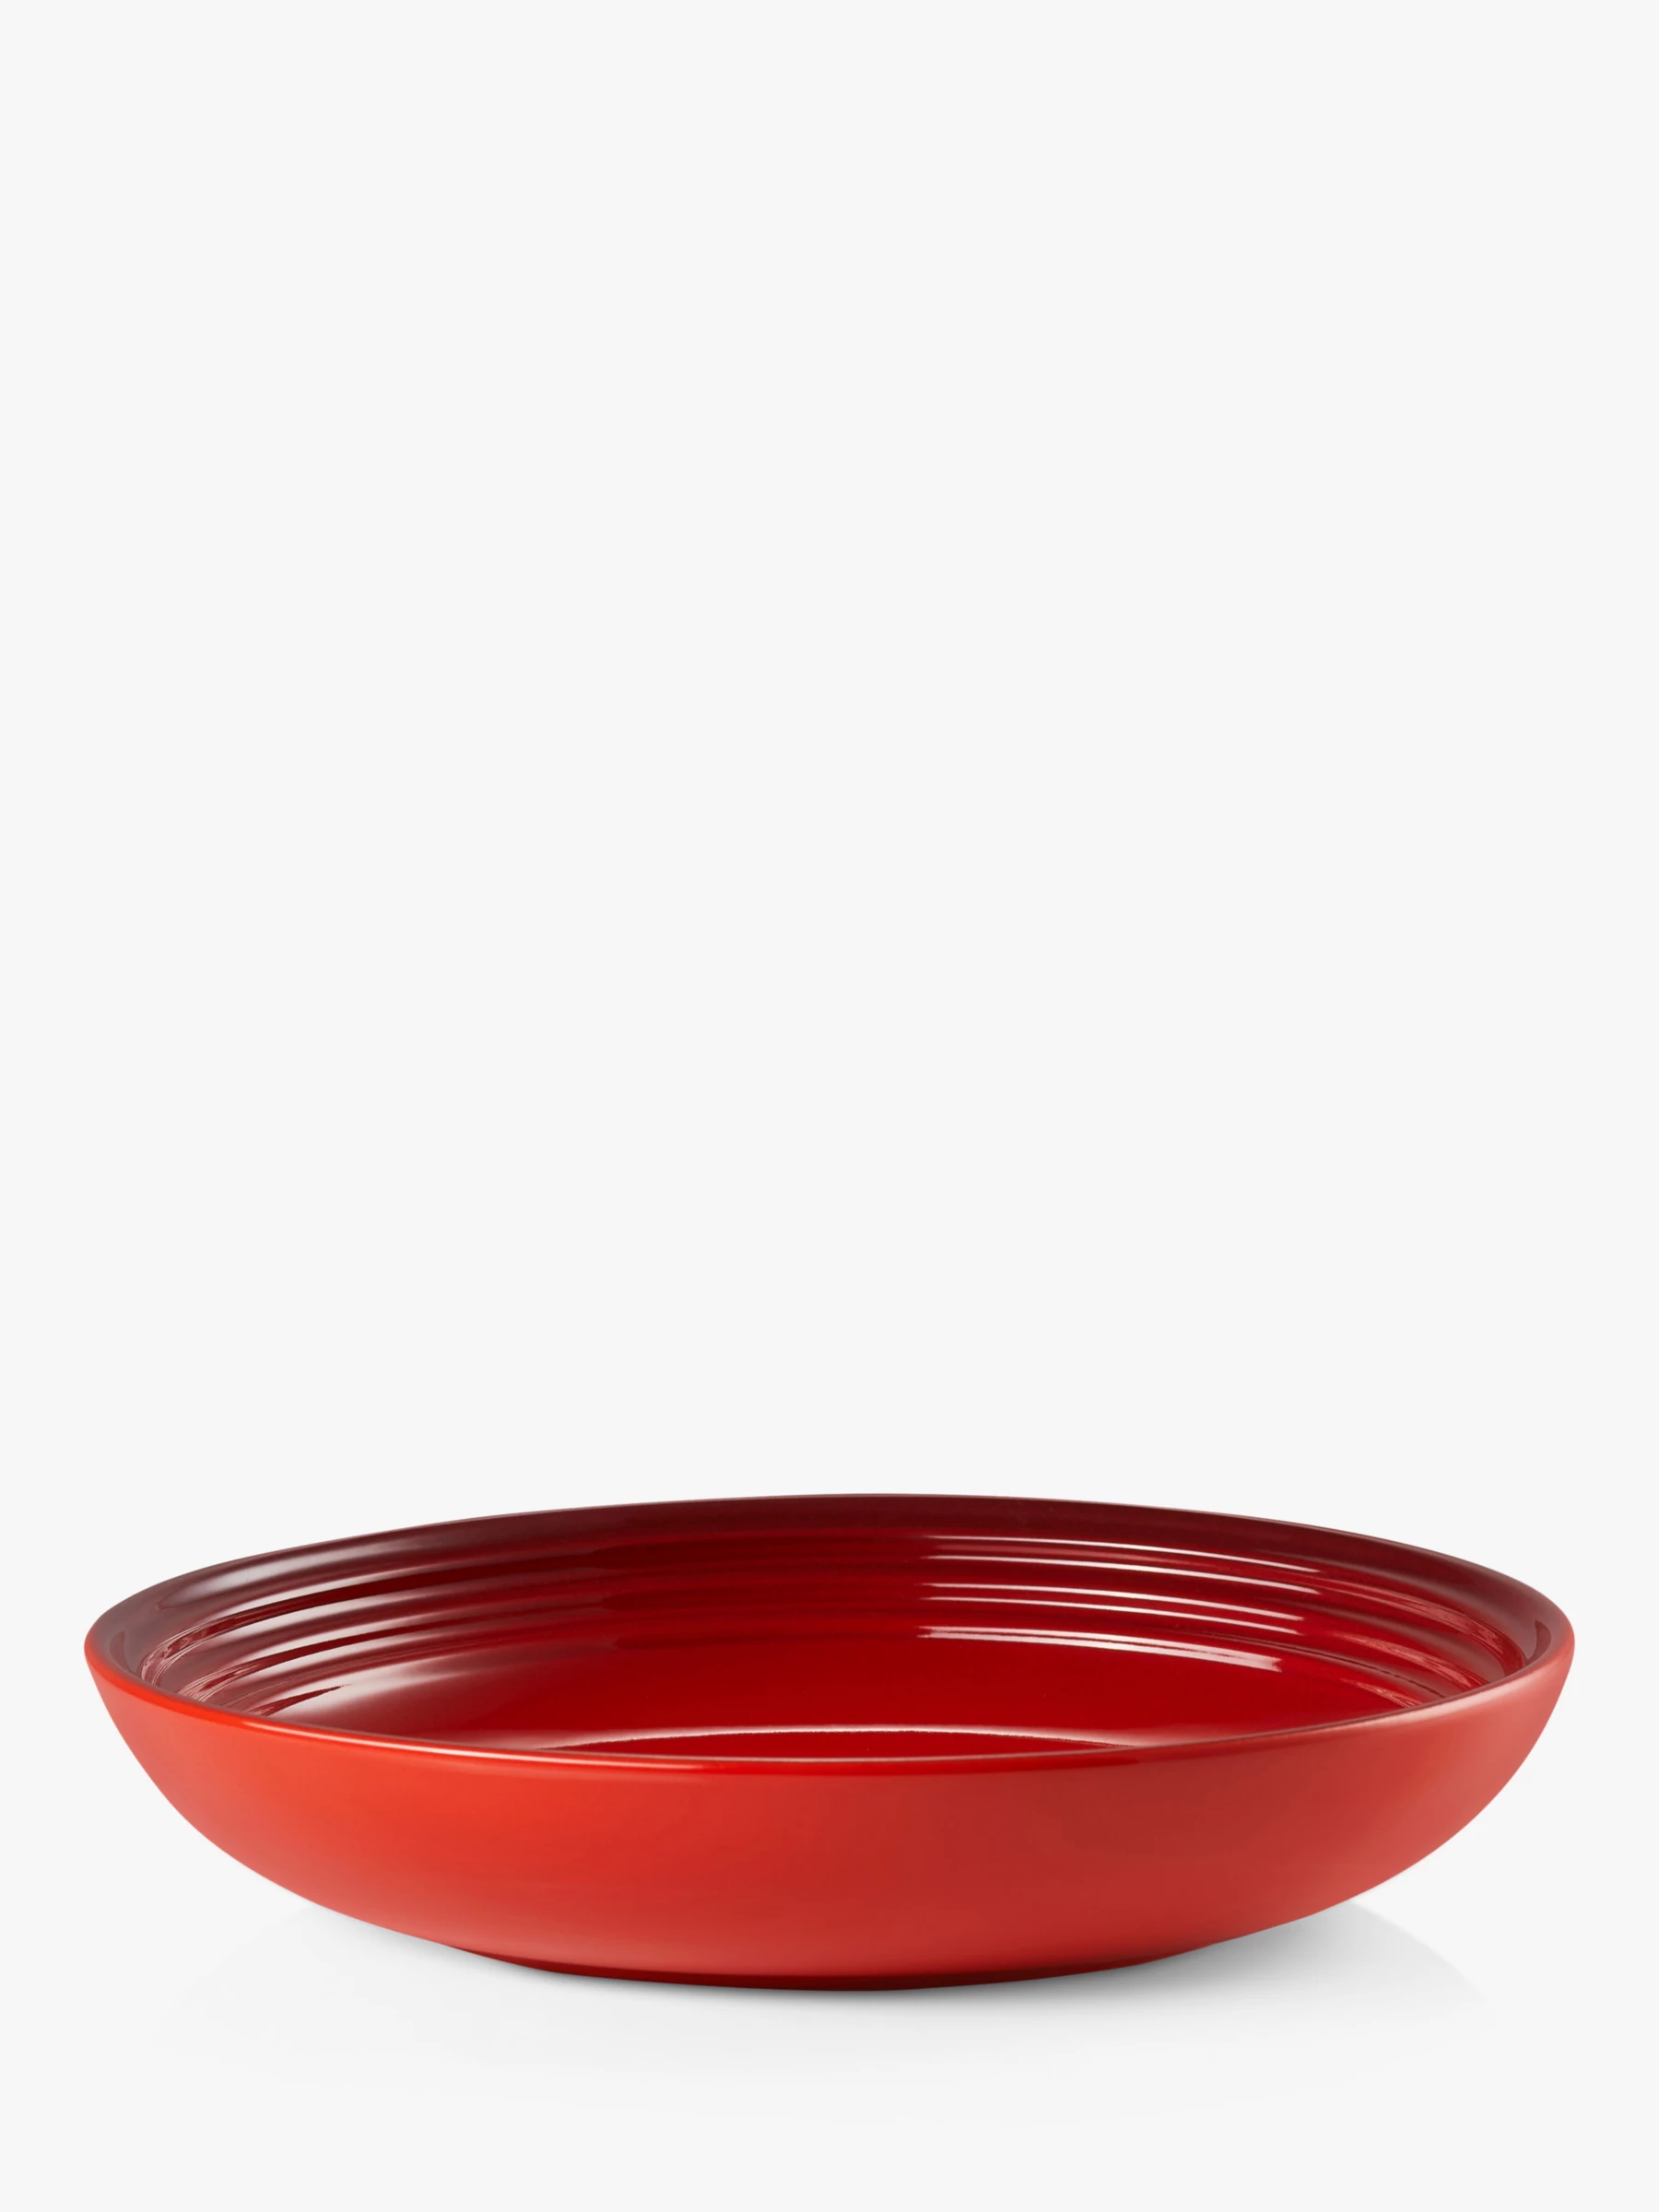 4 Le Creuset Stoneware Pasta Bowl, 21.7cm